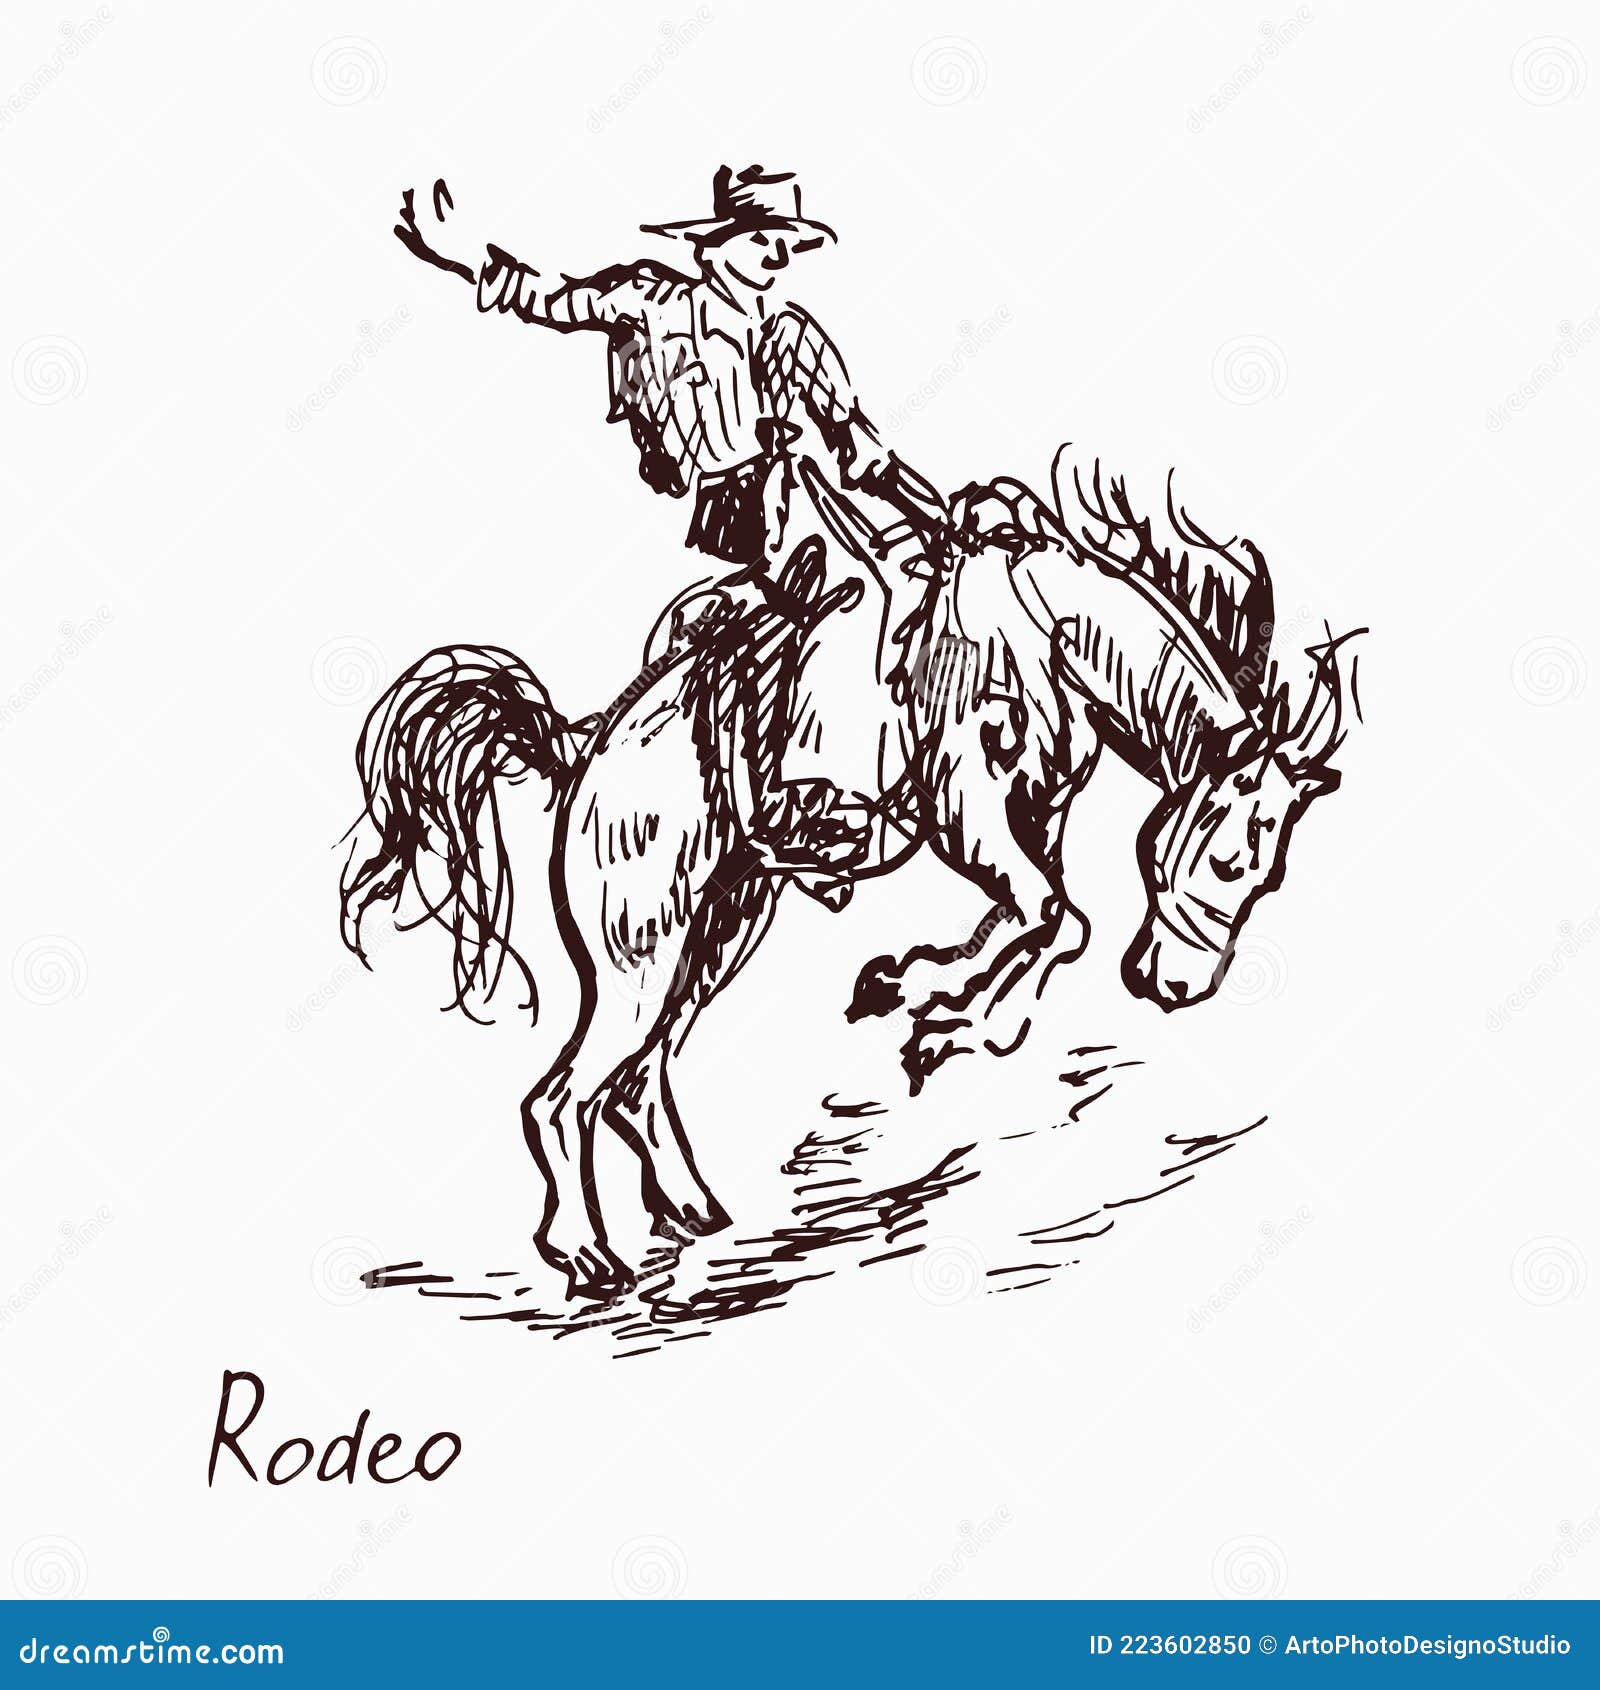 cowboy sketch : r/drawing